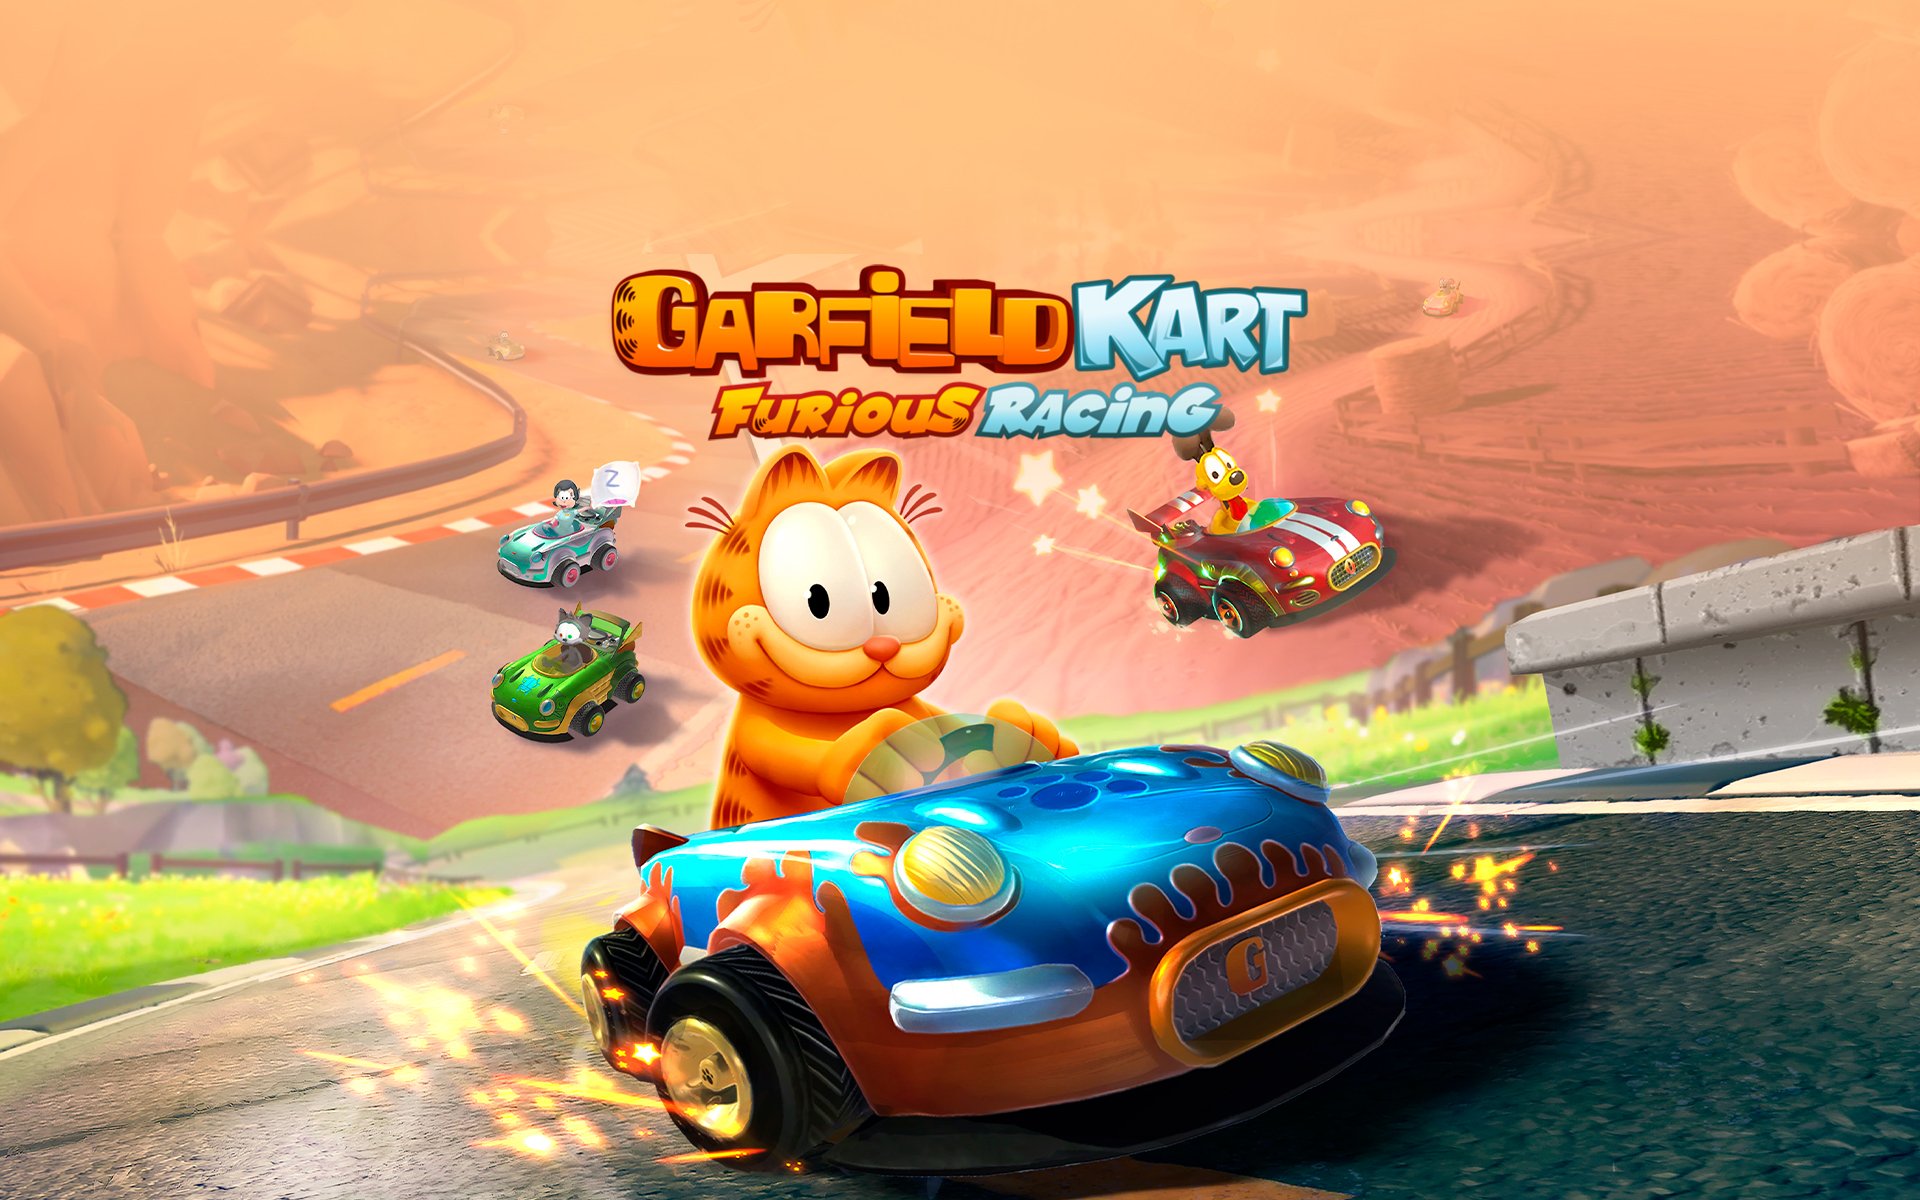 Compre Garfield Kart Furious Racing a partir de R$ 28.99